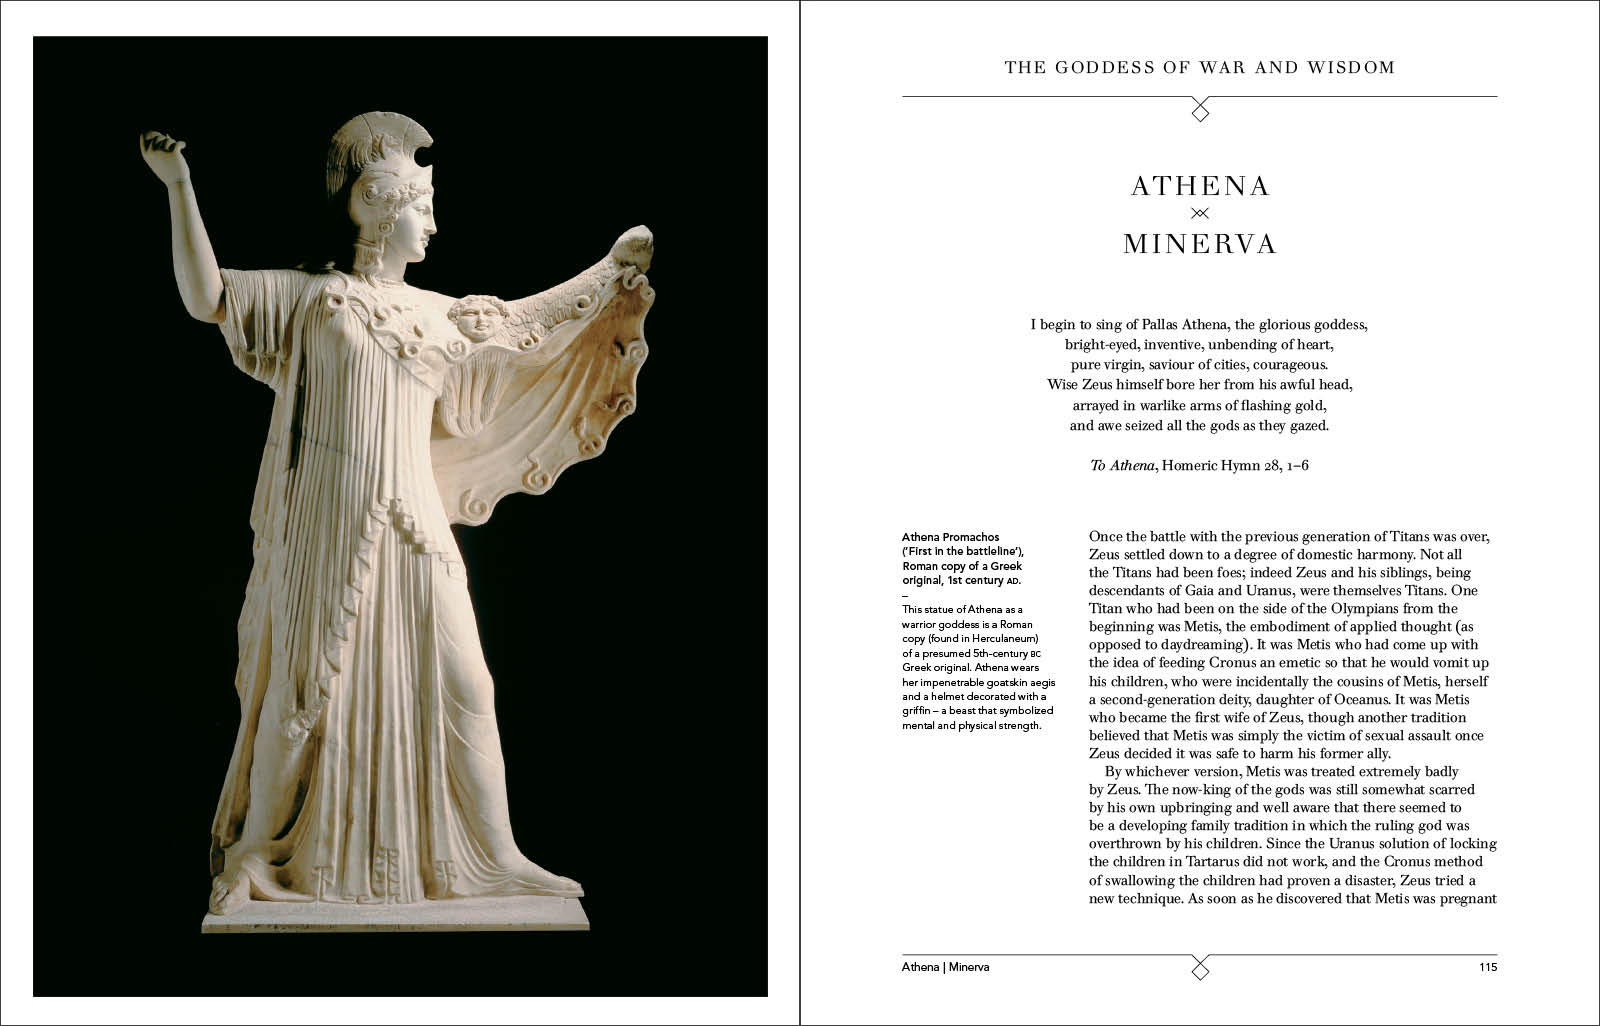 Epithets of Athena, the powerful bright-eyed Greek goddess